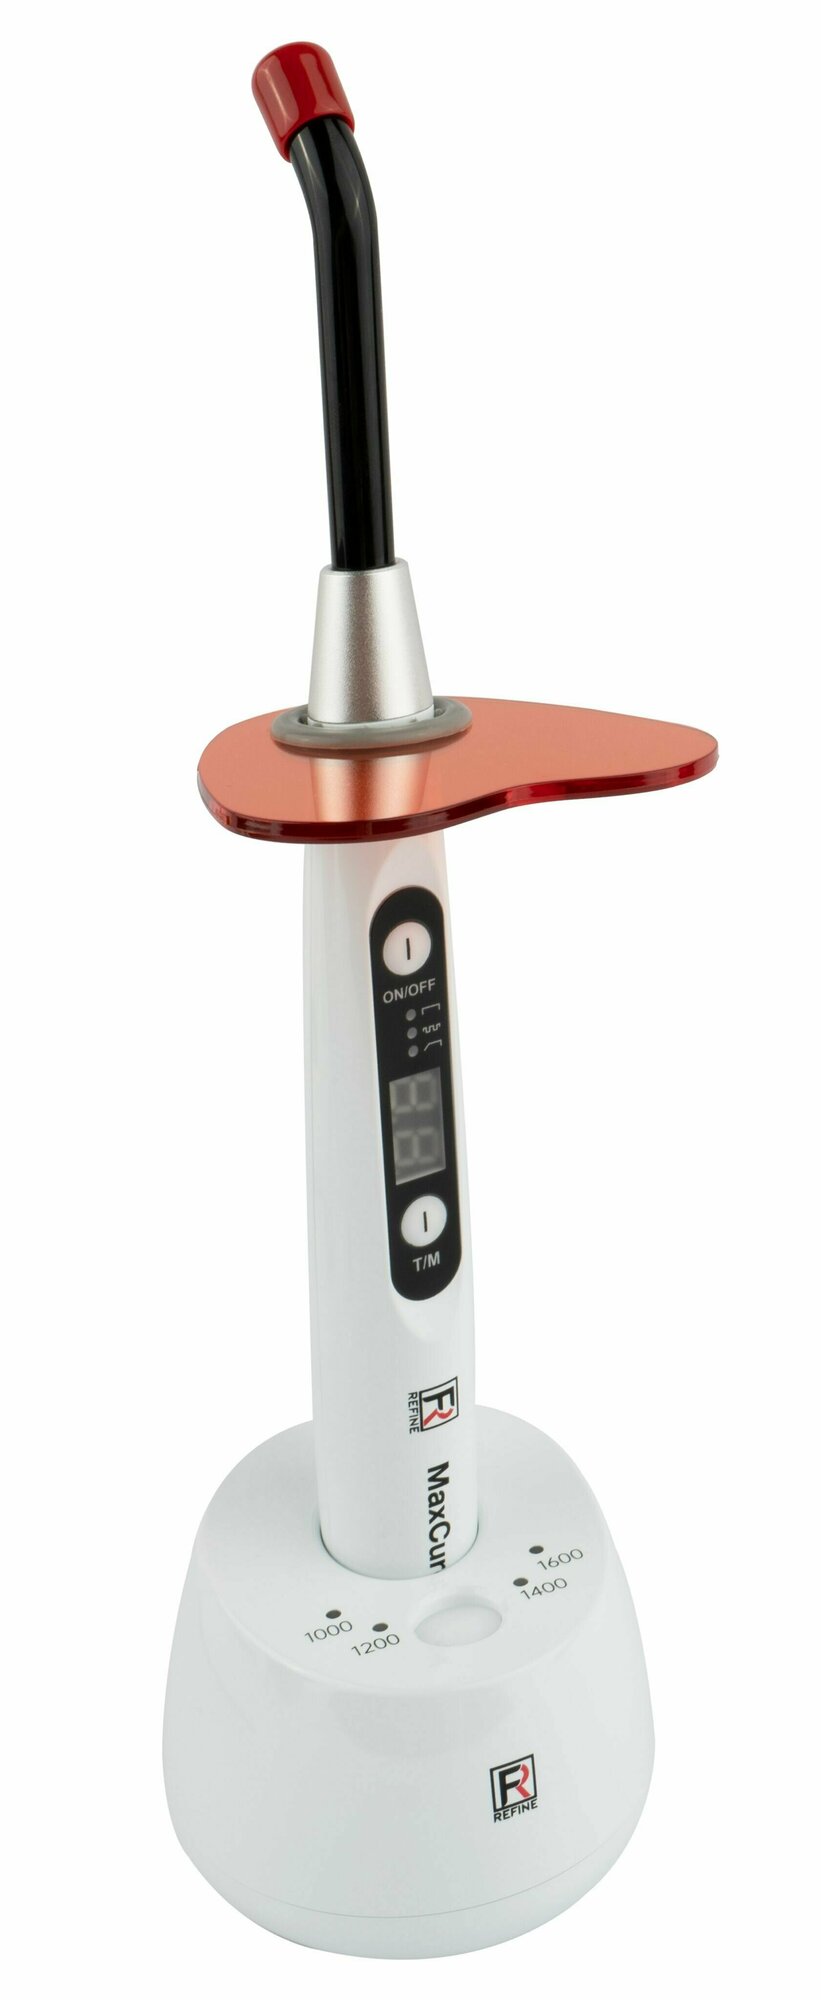 MaxCure3 Pro - светодиодная стоматологическая лампа для фотополимеризации (беспроводная), 1600 мВт/см2, со встроенным фотометром, Refine Medical